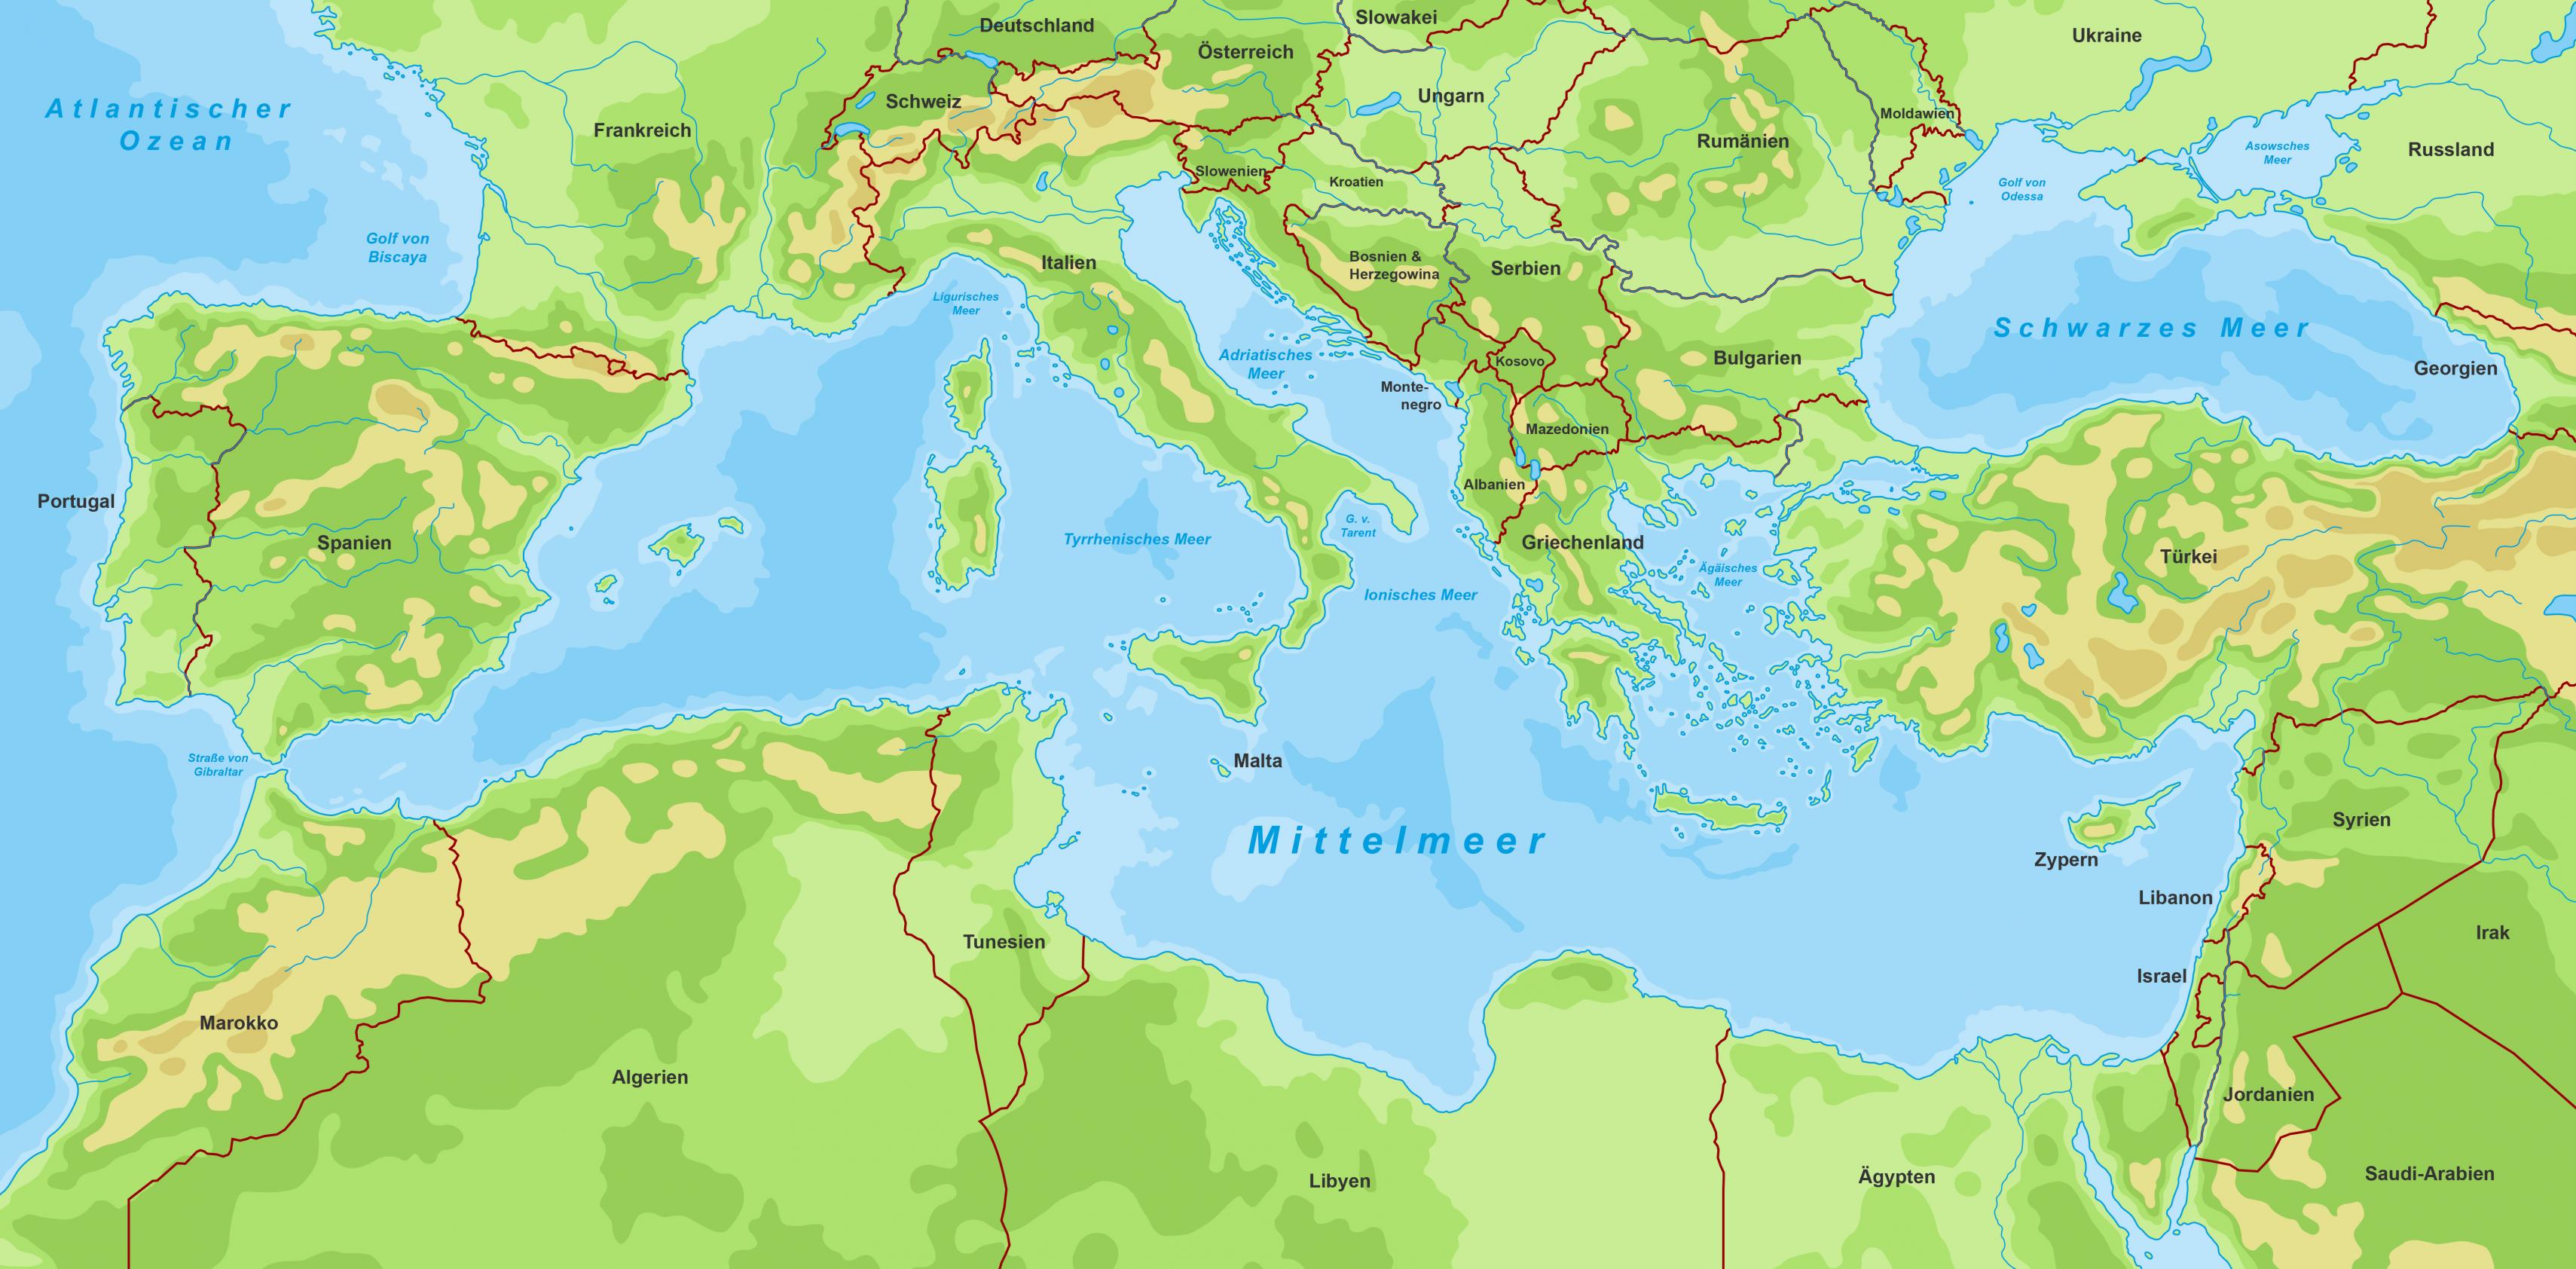 Karte der Mittelmeerregion, in der alle angrenzenden Länder verzeichnet sowie die physikalischen Höhen und Tiefen in unterschiedlichen Farben angedeutet sind.